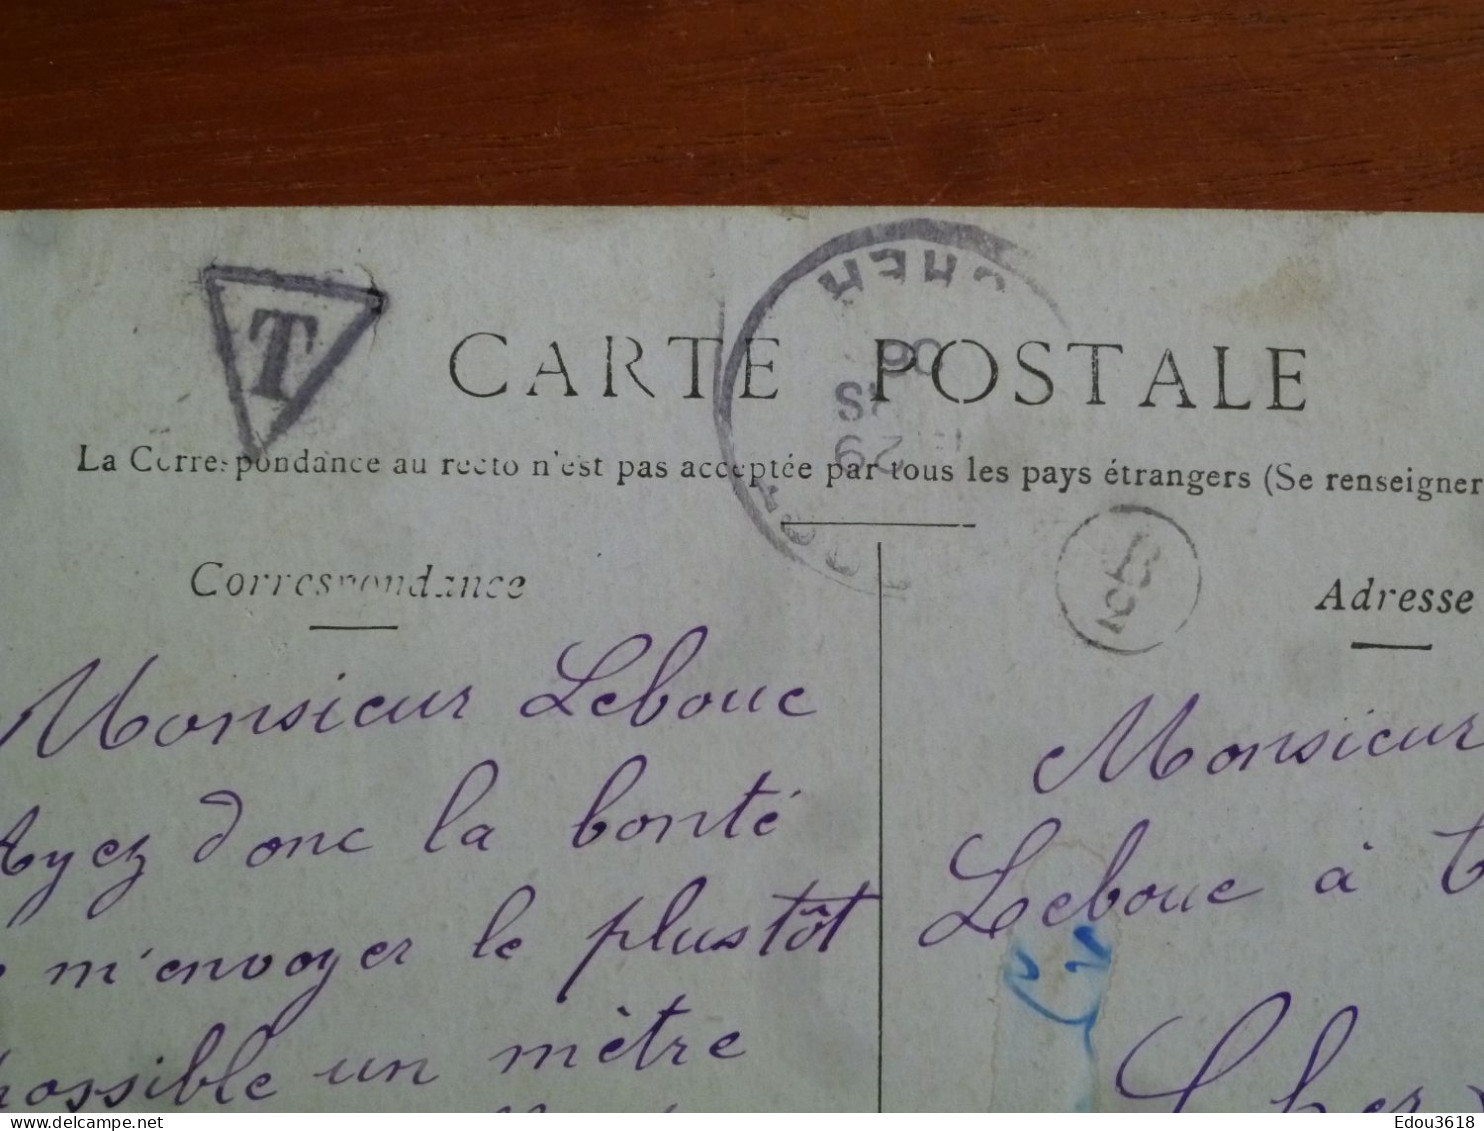 Carte Postale Rome Le Forum Staerck - Timbre Taxe - Lettre T Dans Triangle 1910 - Indicatif Circulaire Facteur 758 - Cachets Manuels